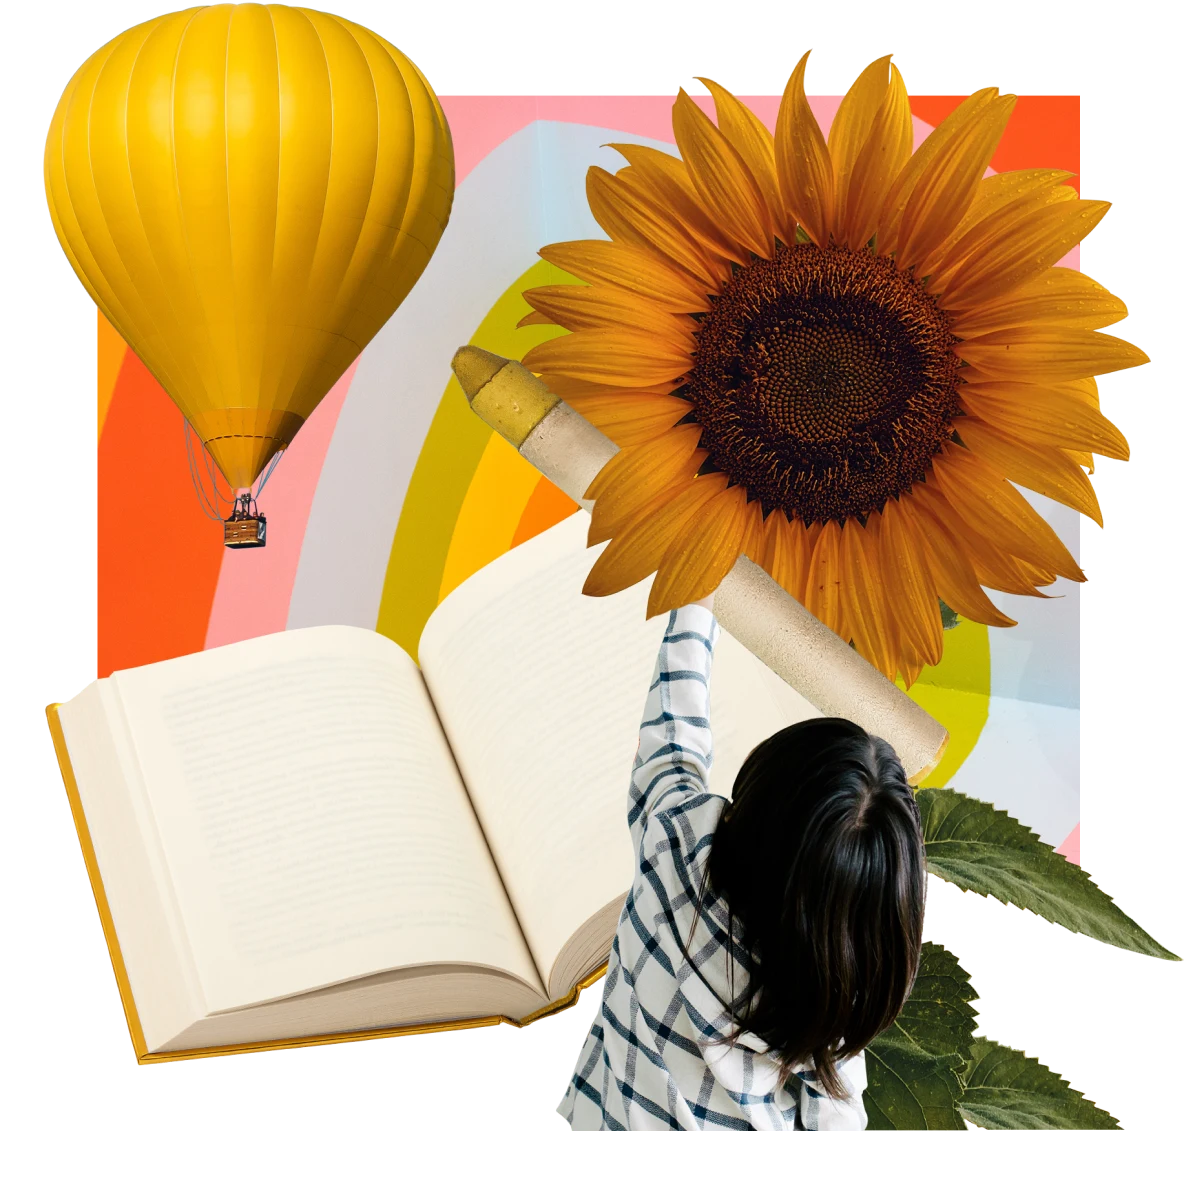 In der Mitte ein offenes Buch. Ein Kind streckt seine Arme nach oben in Richtung eines Wachsmalstifts und einer Sonnenblume. Links ein gelber Heißluftballon vor einem Hintergrund in Regenbogenfarben.